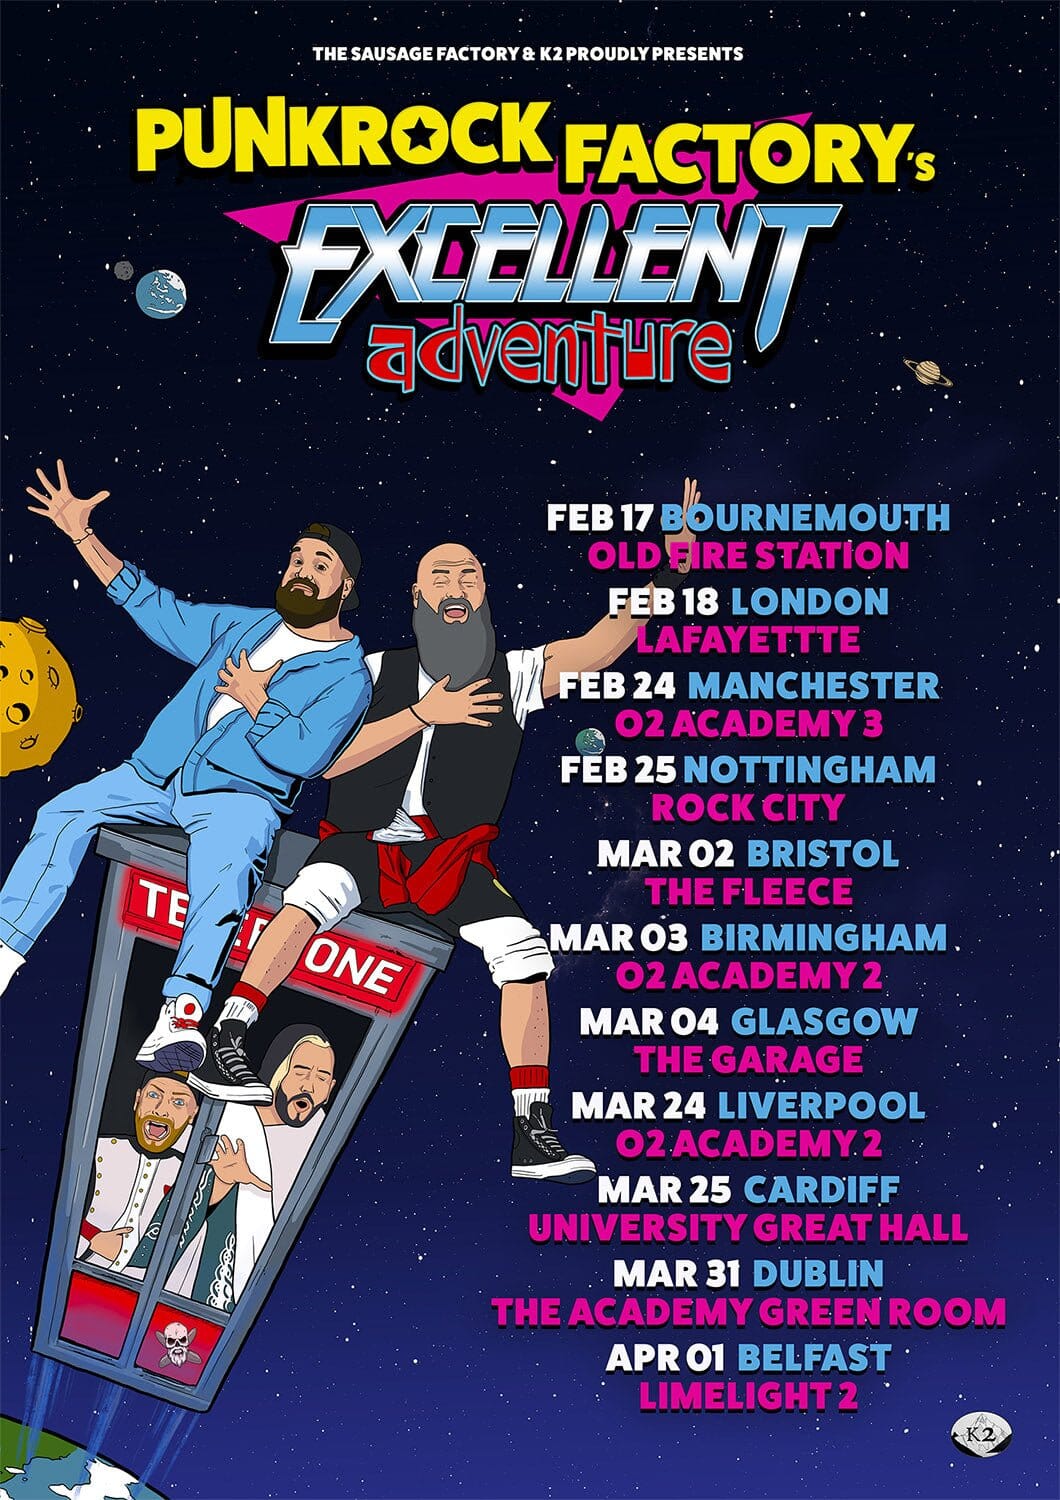 Excellent Adventure tour poster Punk Rock Factory 